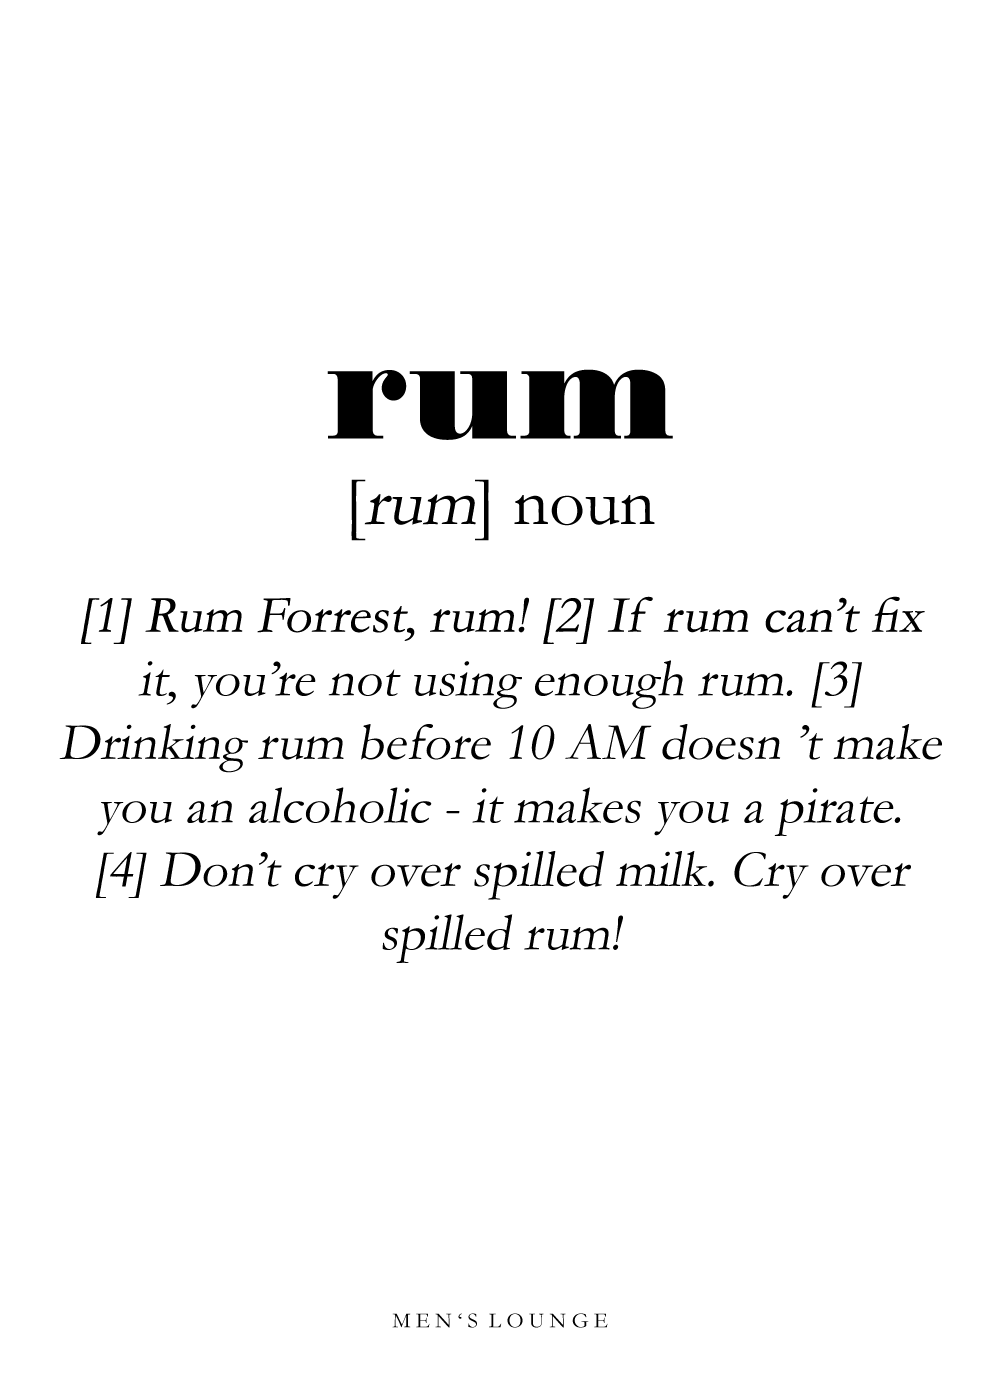 Billede af Rum definition - Men's Lounge plakat